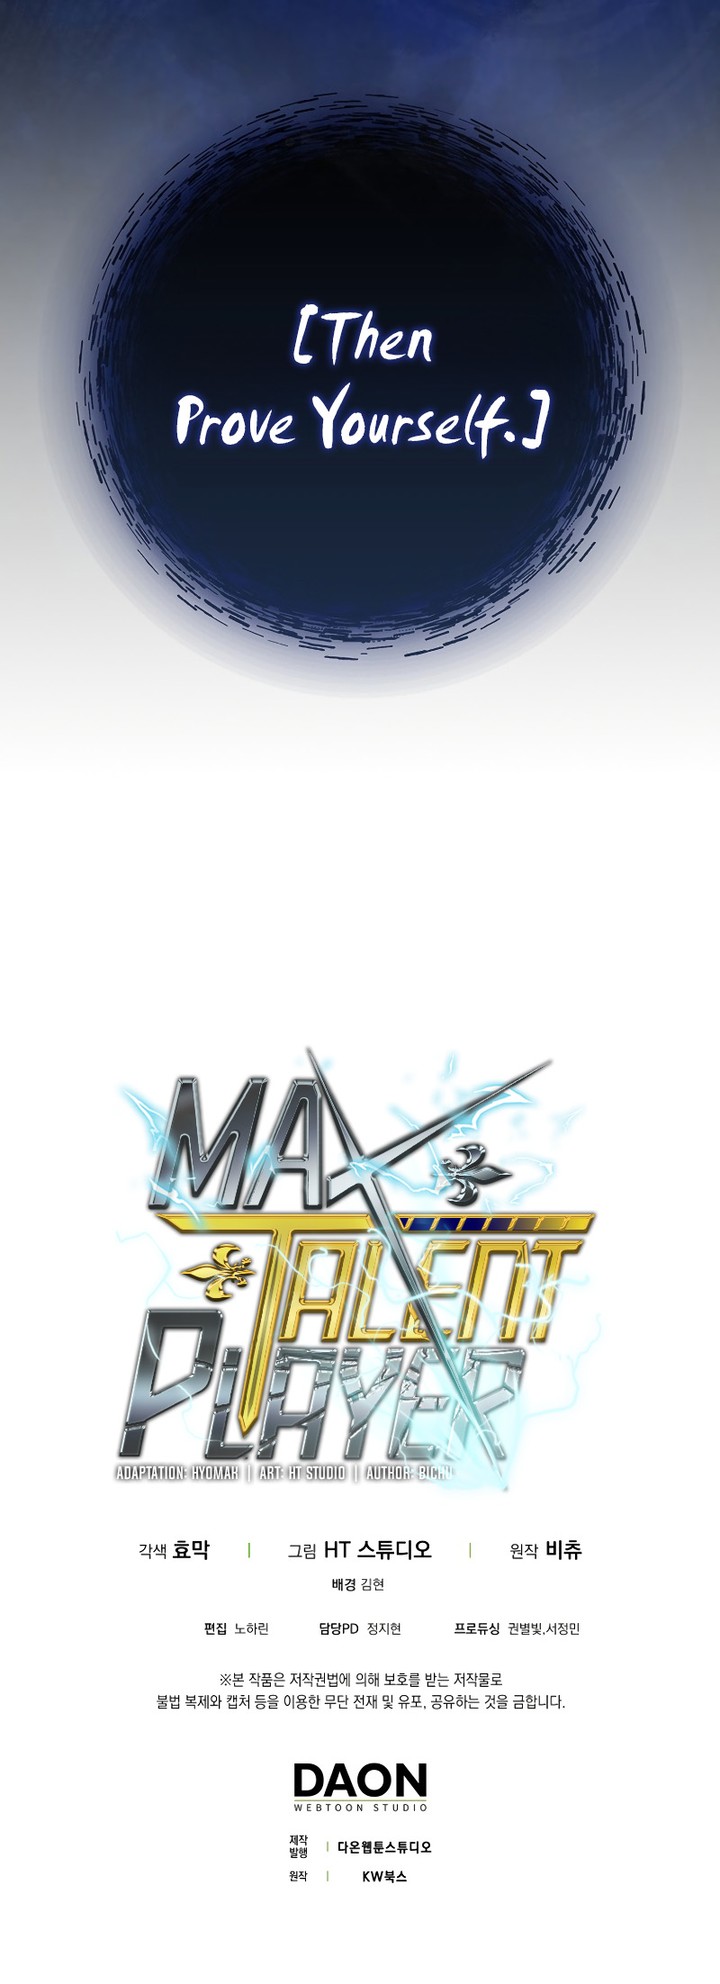 Max Talent Player 19 16